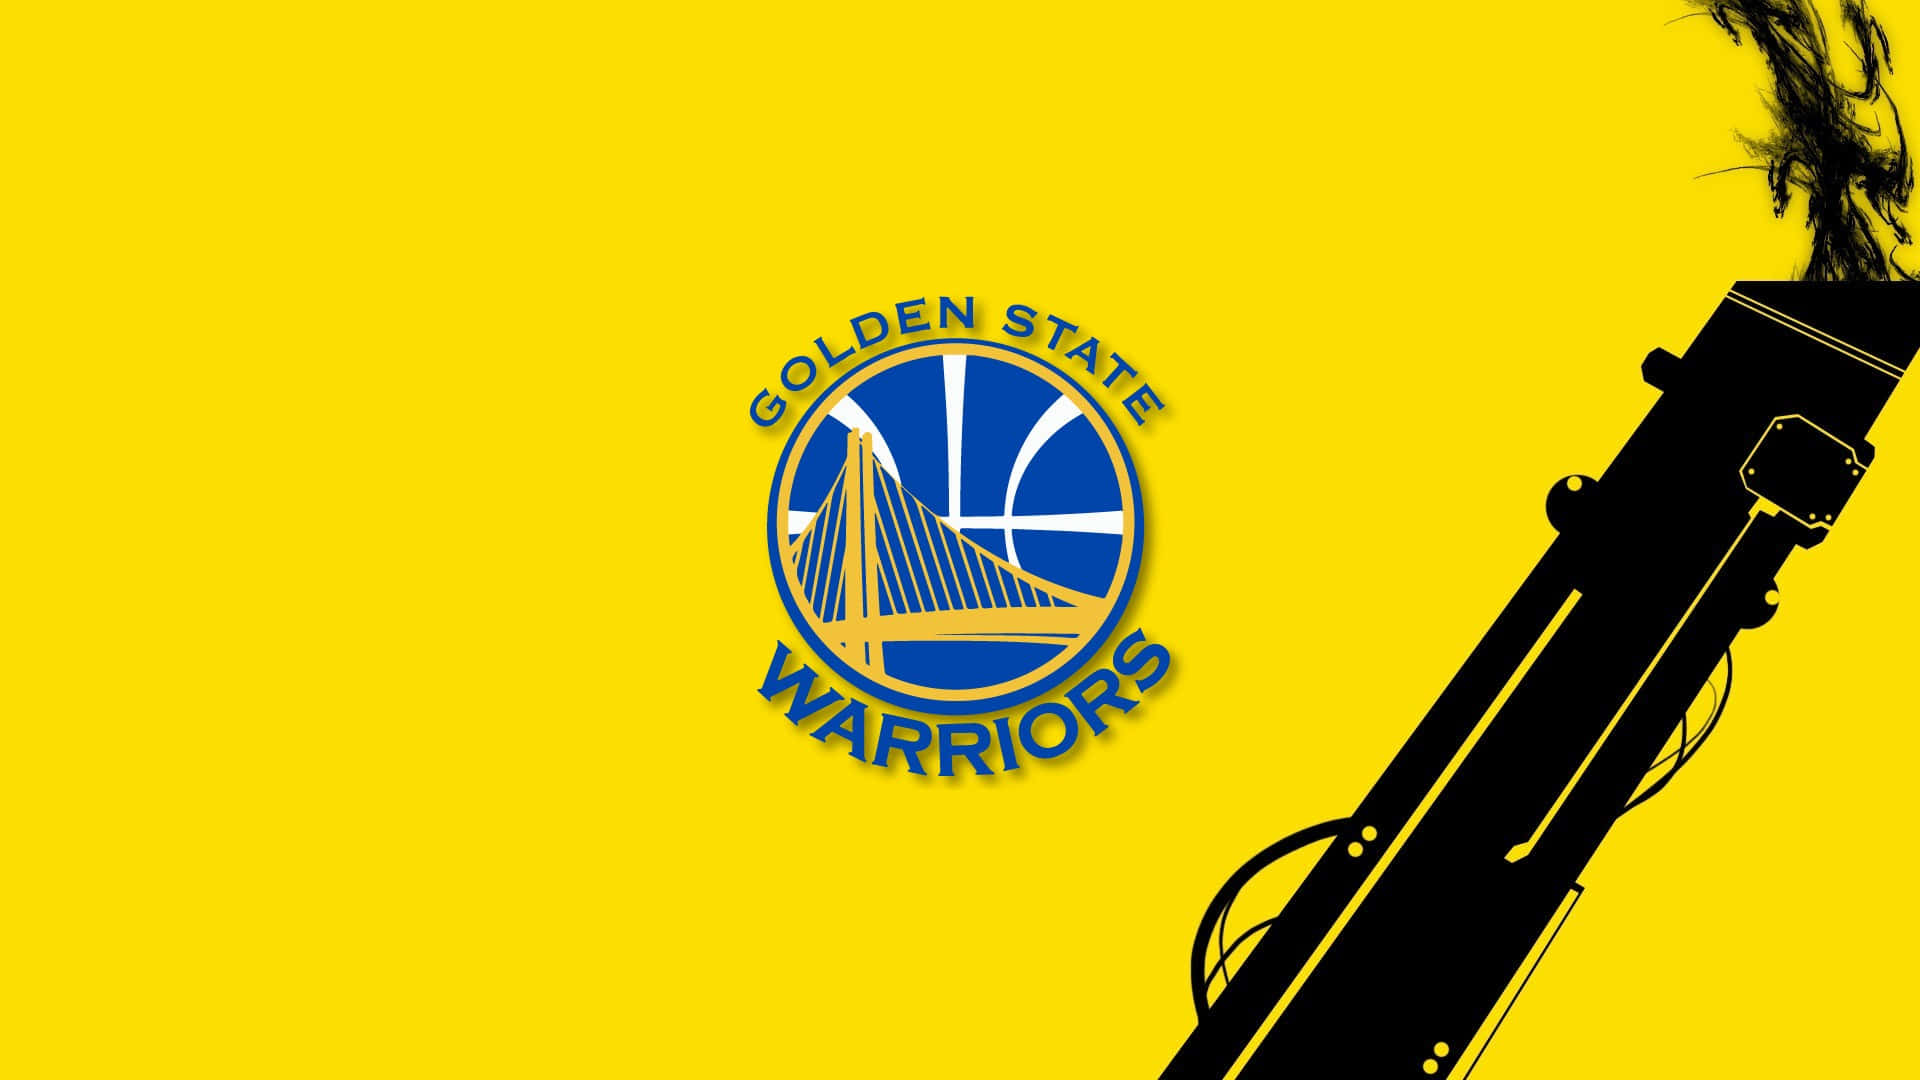 180 Best Golden State Warriors ideas  golden state warriors nba wallpapers  nba stephen curry